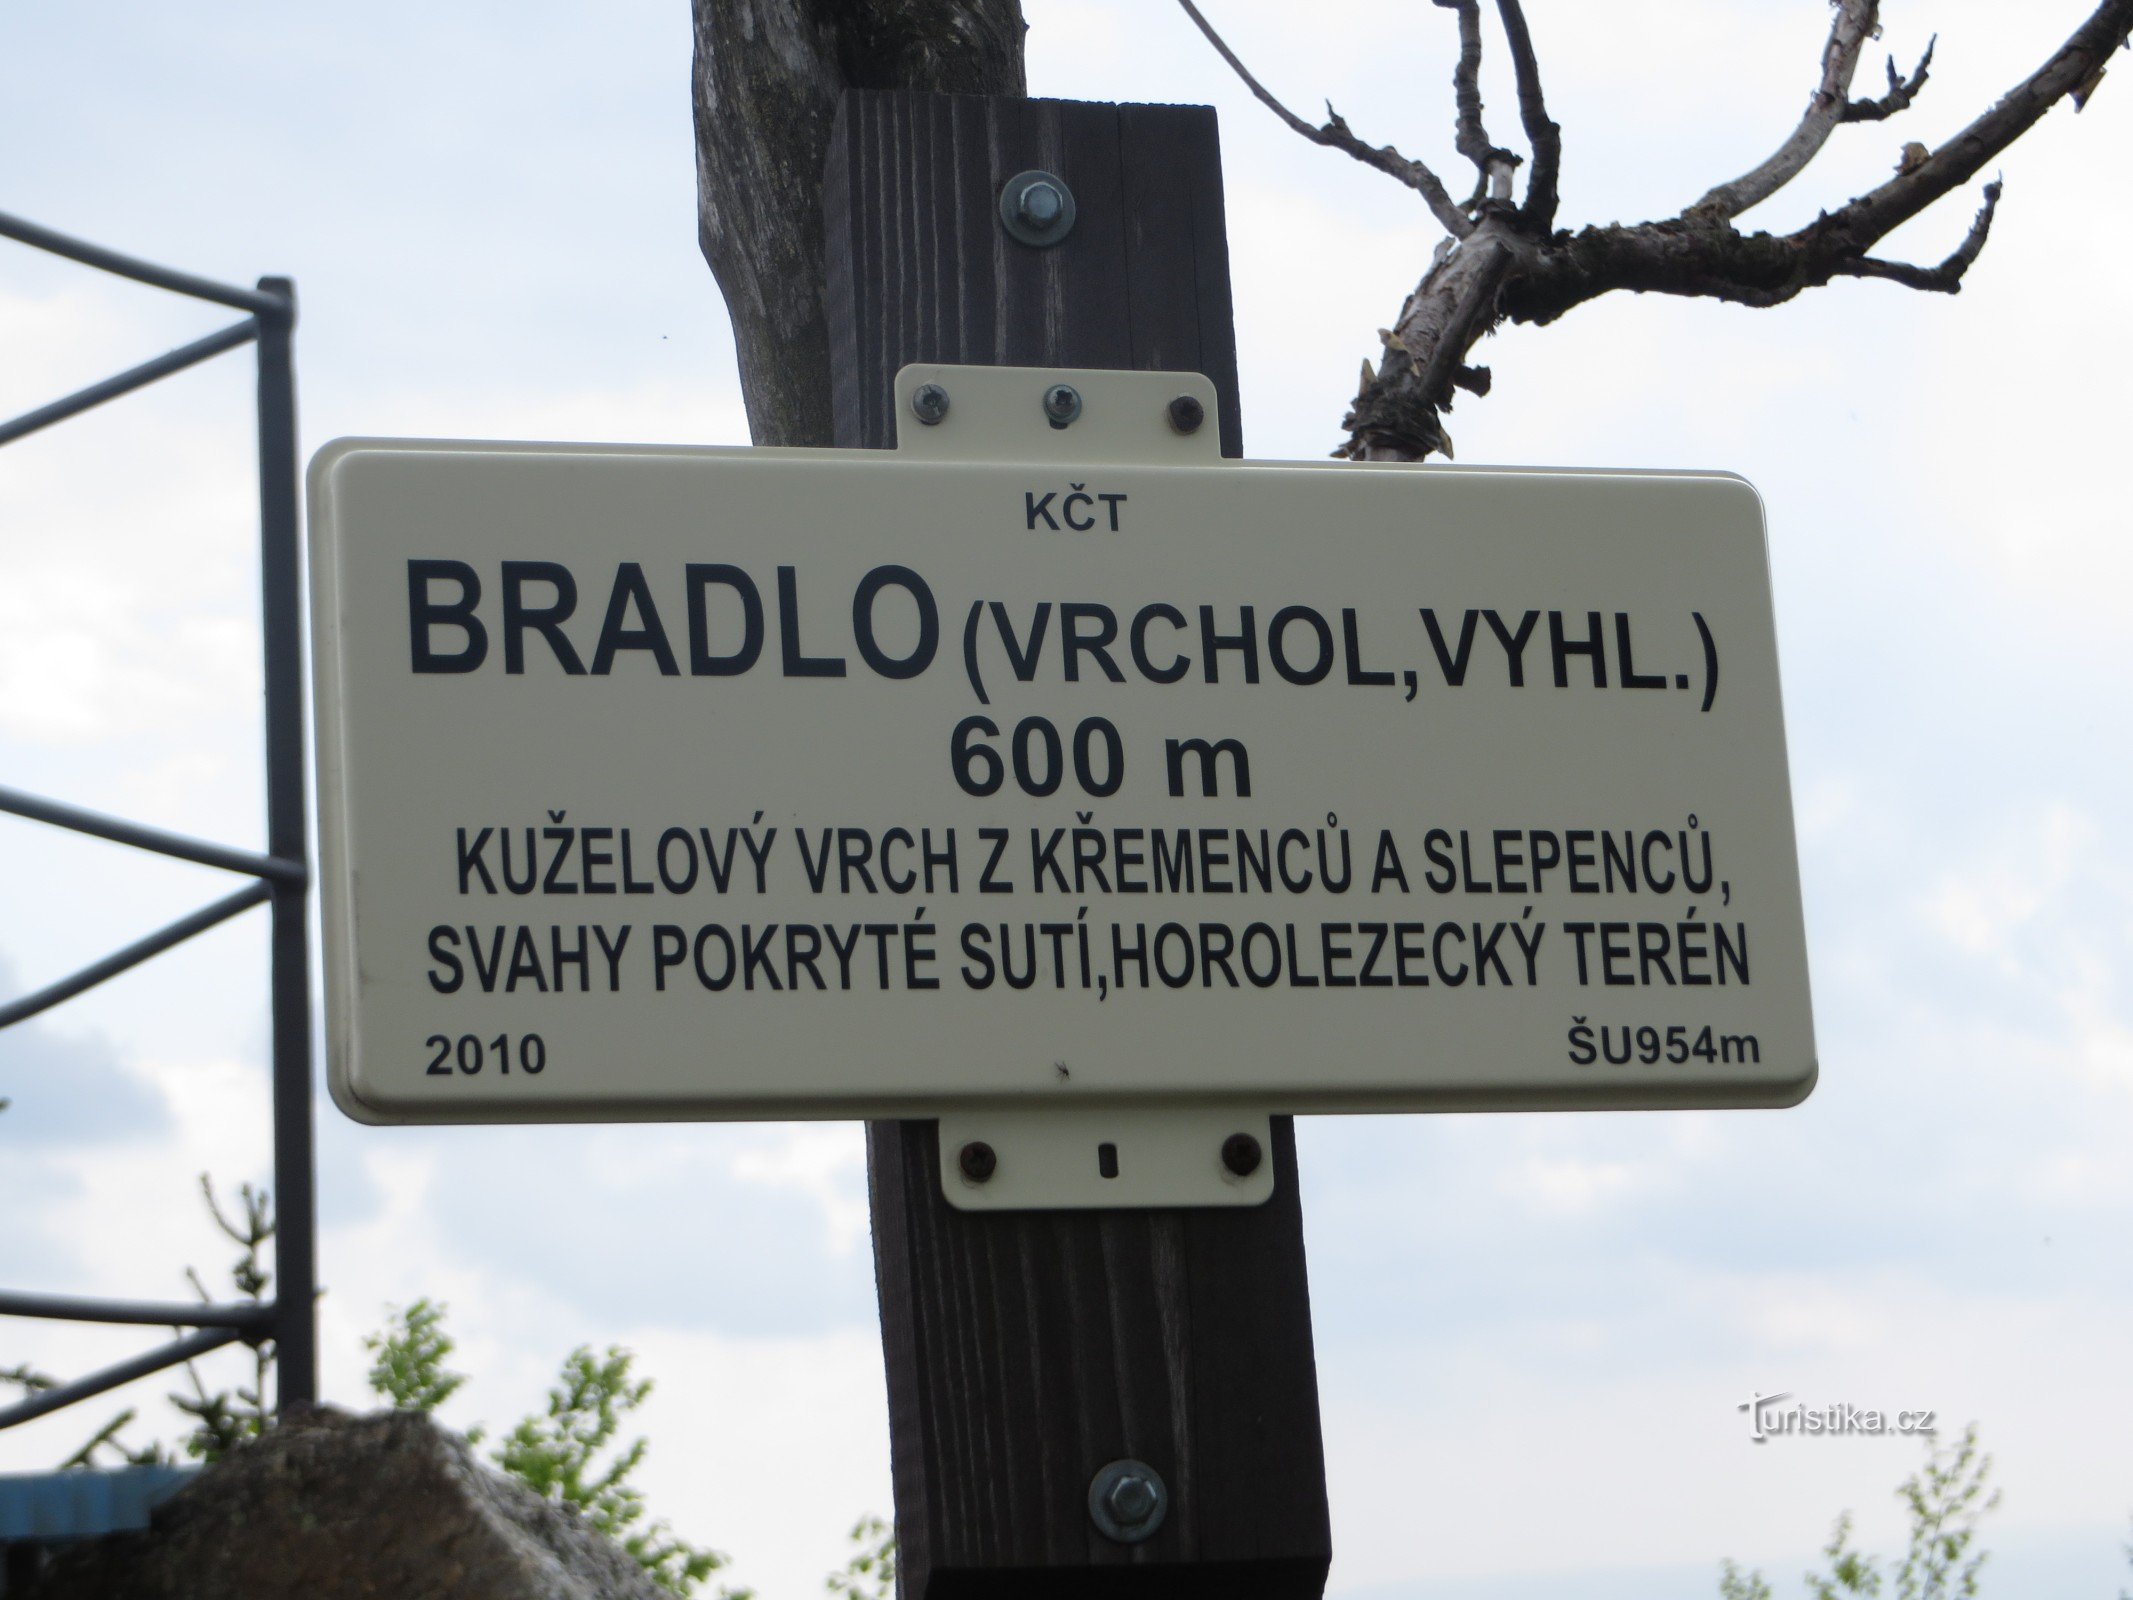 Placa de sinalização Bradlo